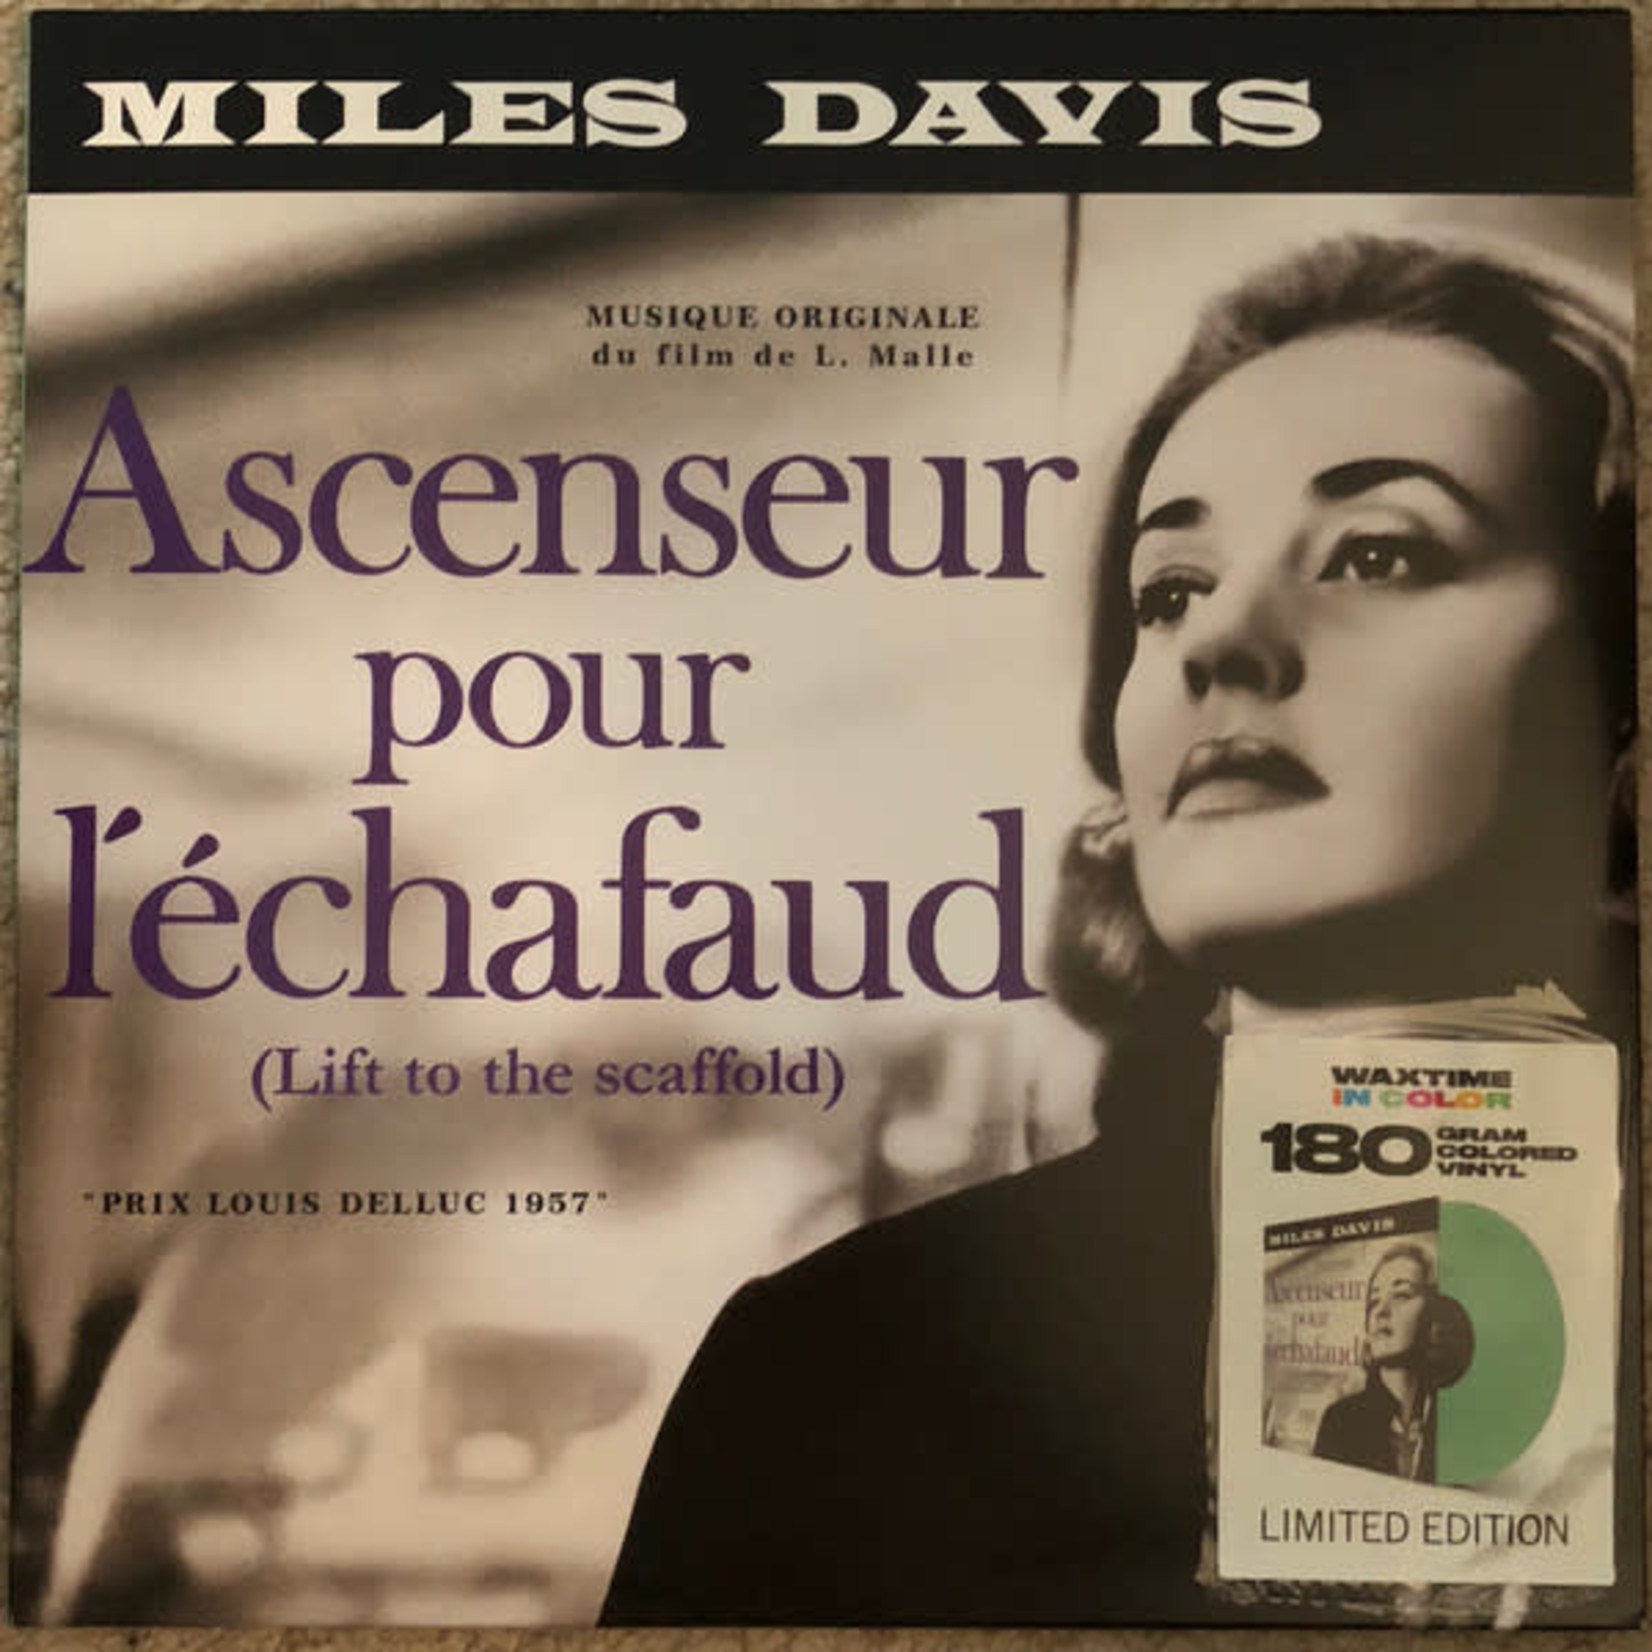 [New] Miles Davis - Ascenseur Pour L'echafaud (green vinyl)